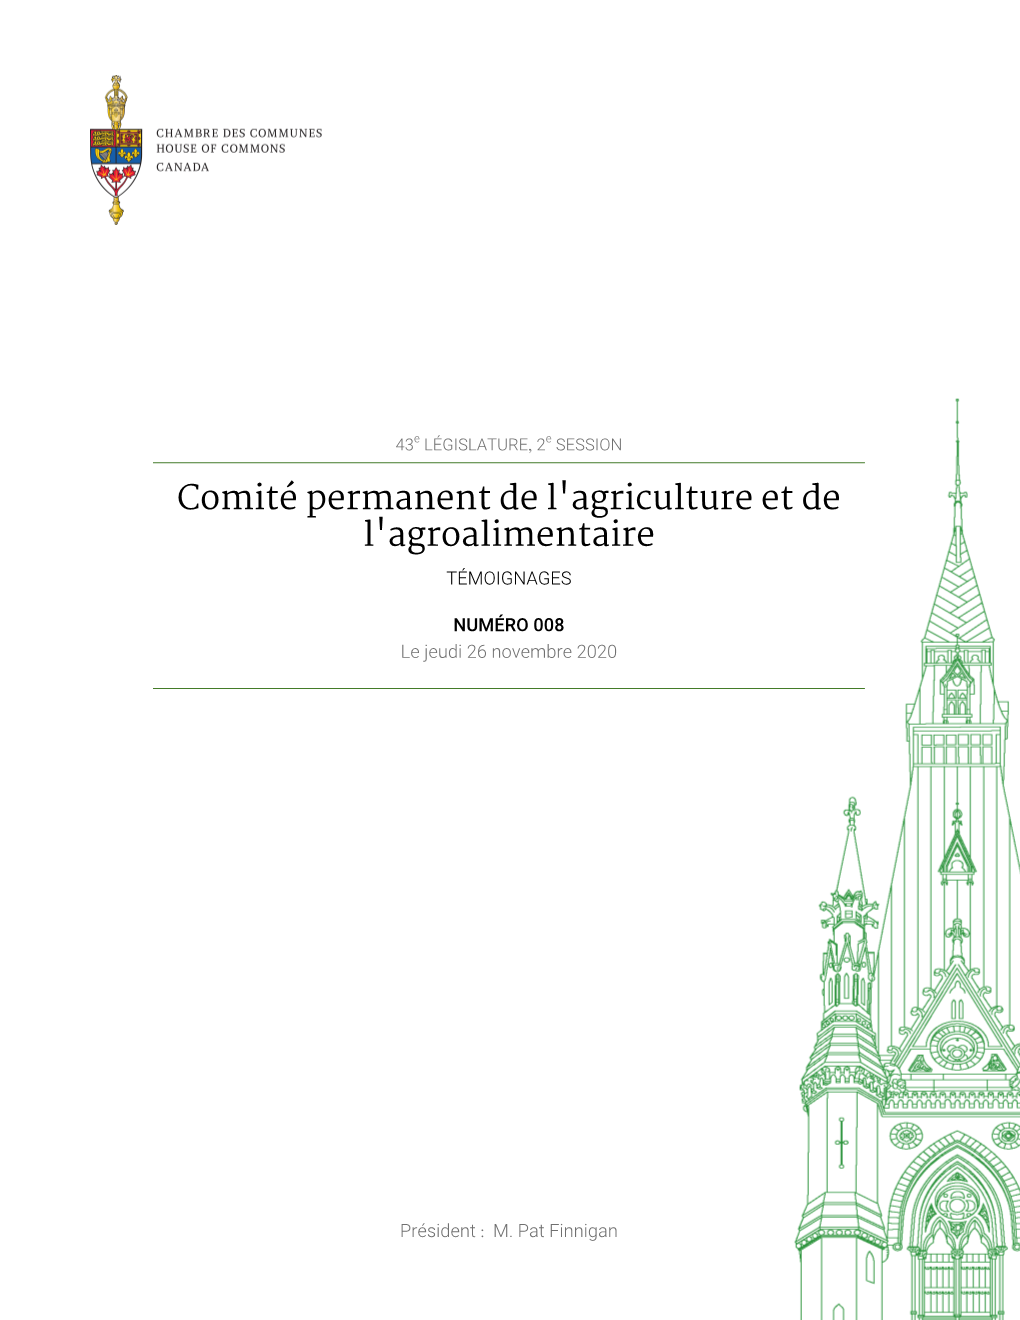 Témoignages Du Comité Permanent De L'agriculture Et De L